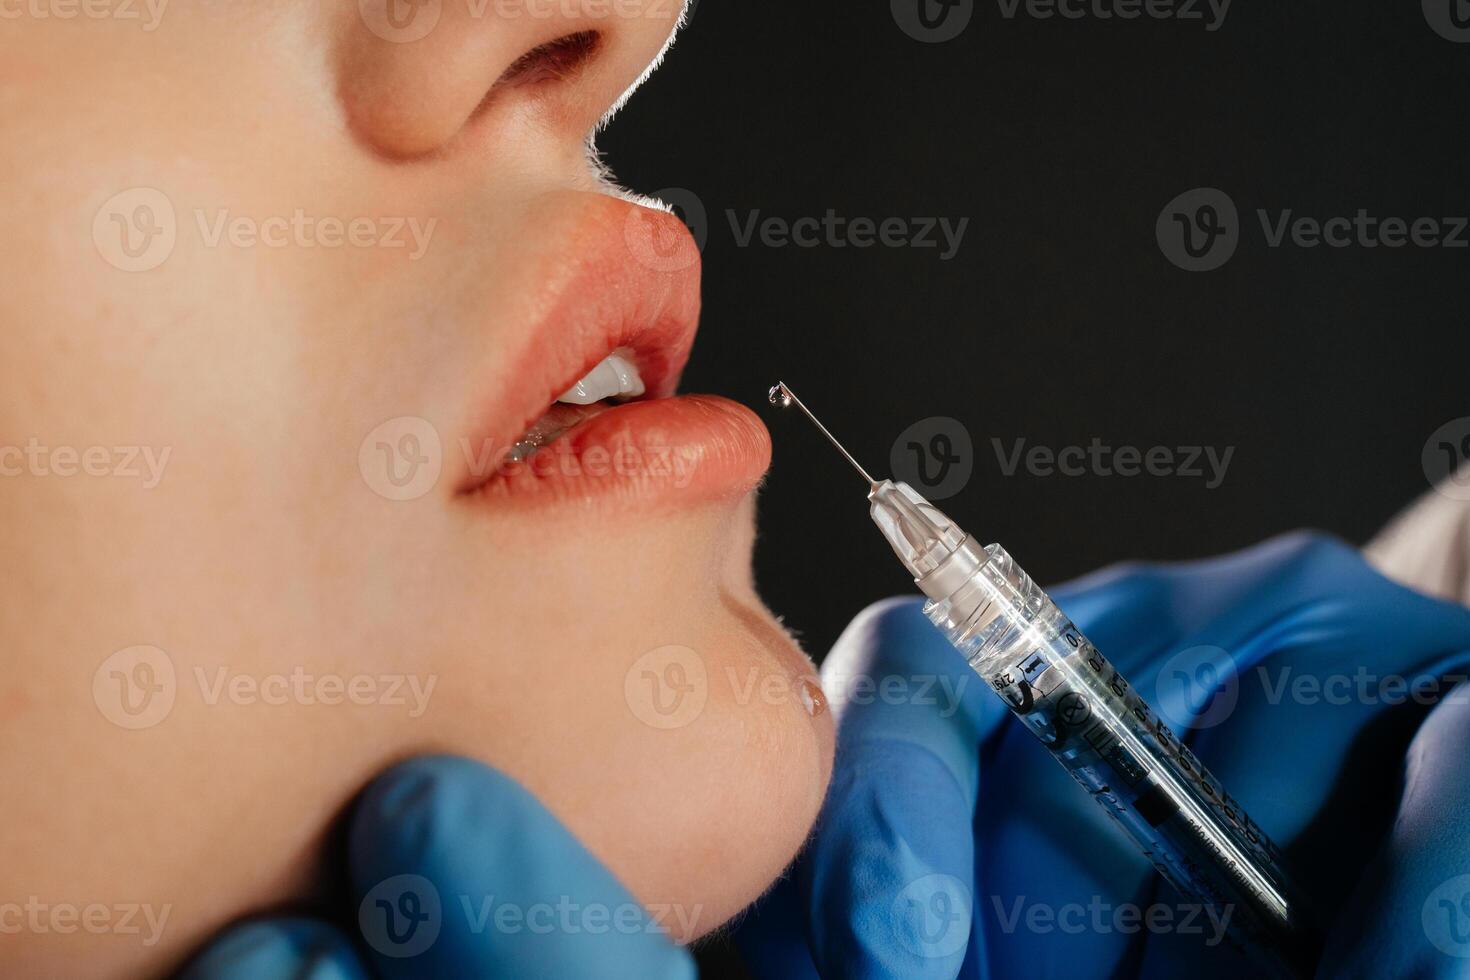 cortada sensual fêmea lábios, procedimento lábio aumento. seringa perto mulher boca, injeções para aumentar lábios forma. Alto qualidade foto